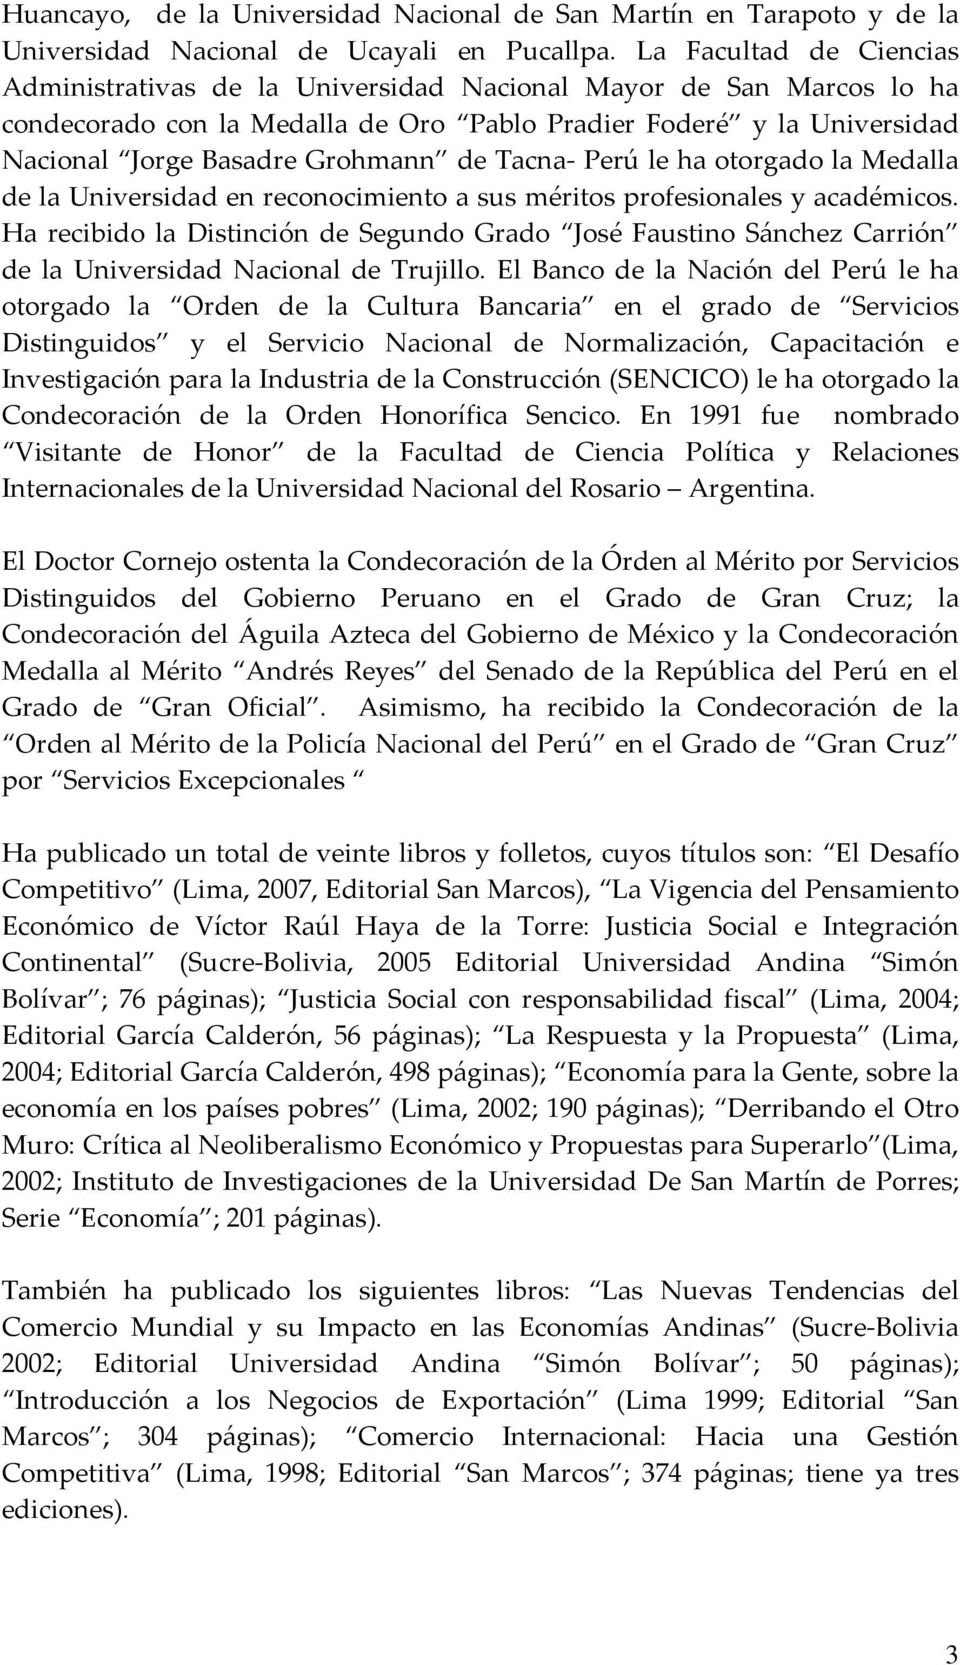 Tacna Perú le ha otorgado la Medalla de la Universidad en reconocimiento a sus méritos profesionales y académicos.